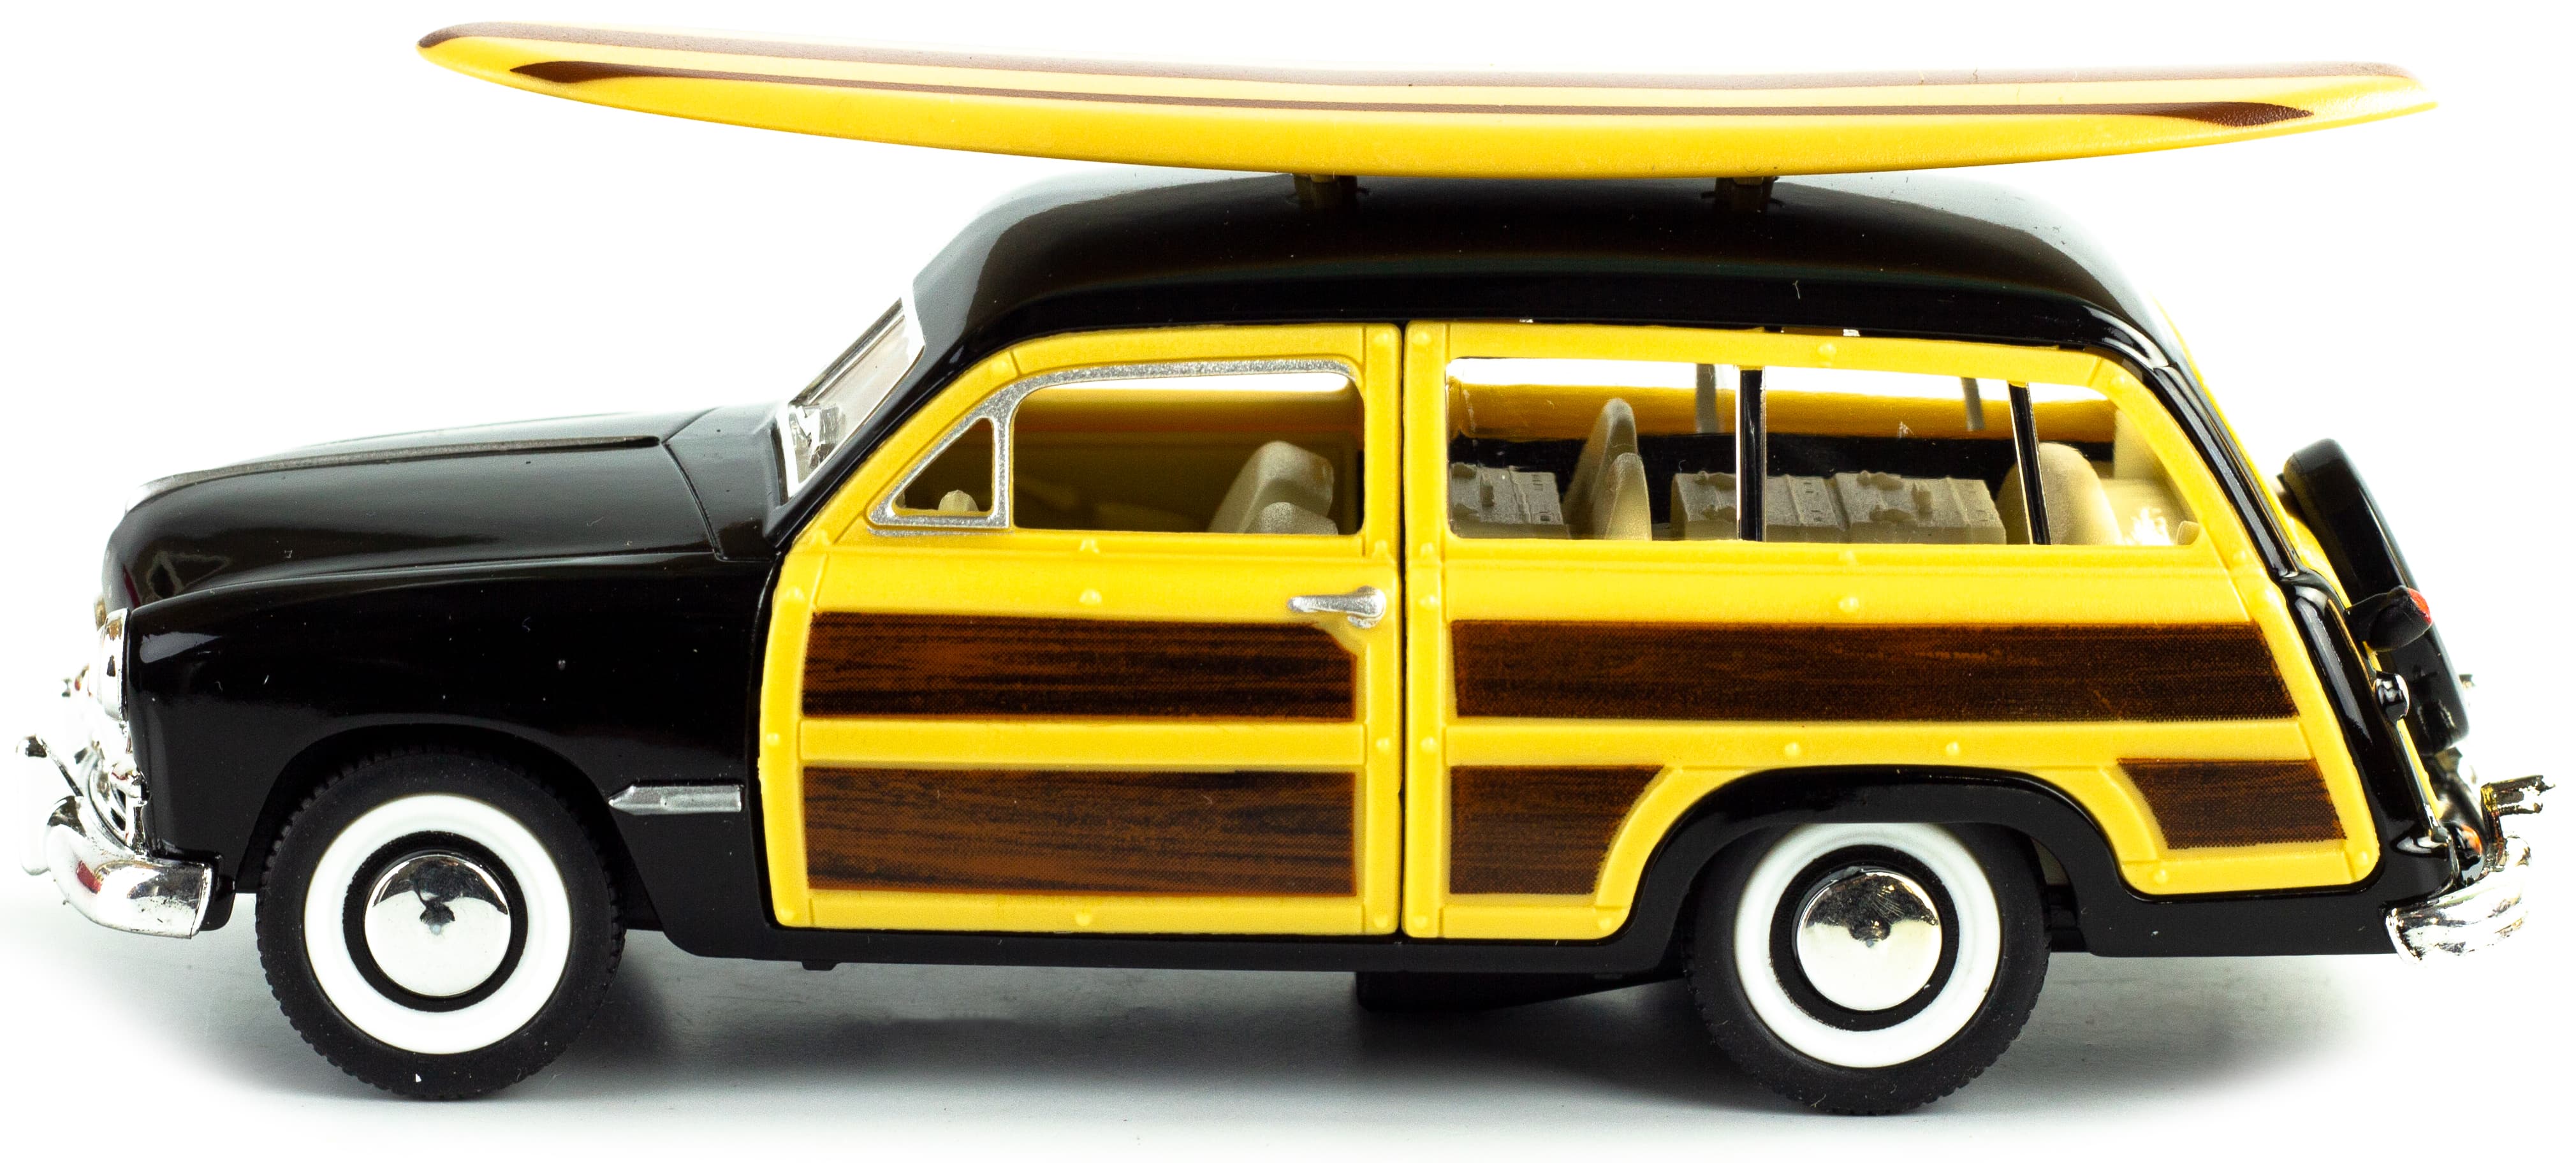 Машинка металлическая Kinsmart 1:40 «1949 Ford Woody Wagon ца Wooden surfboard» KT5402DS1 инерционная / Черный